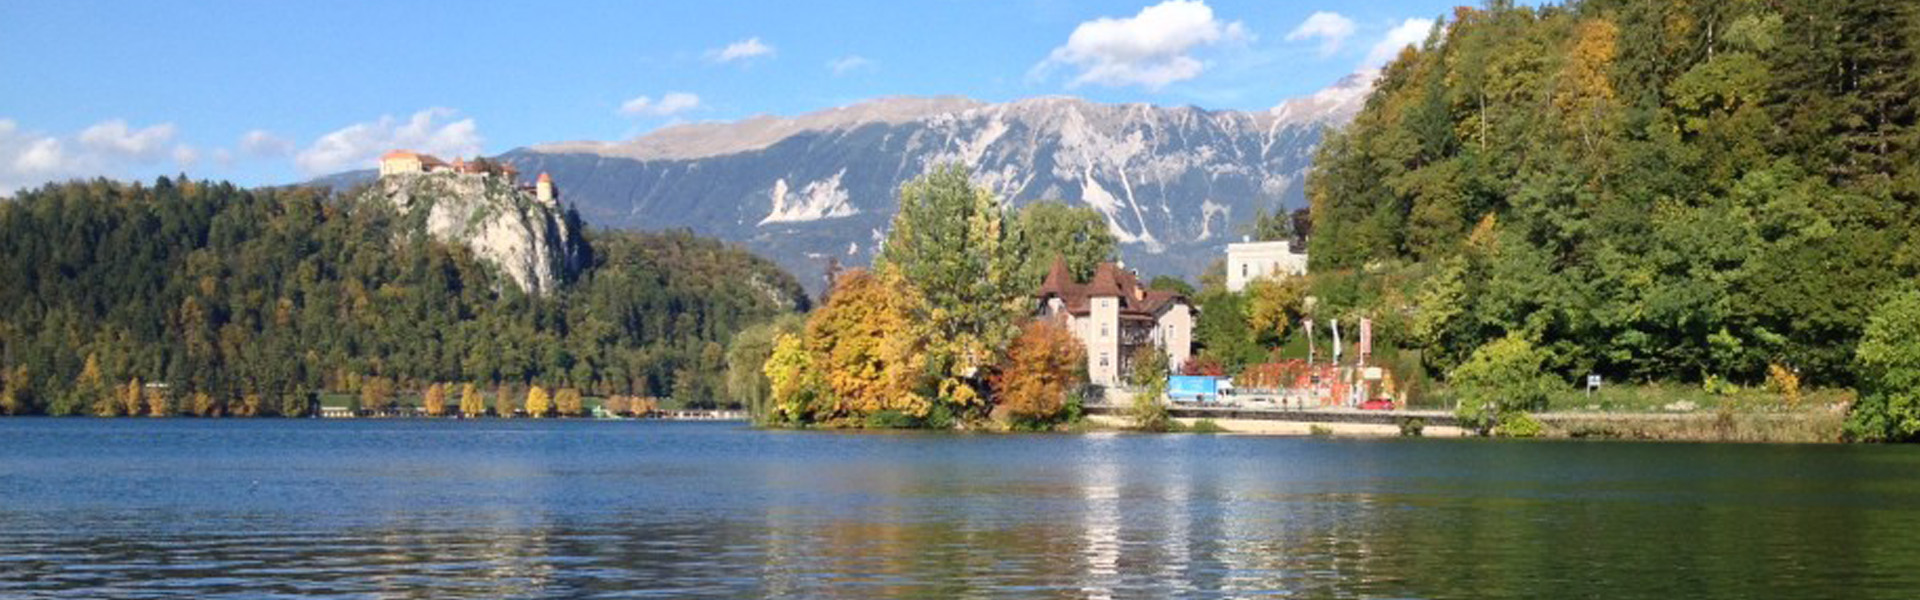 Um conto de fadas no Lago Bled